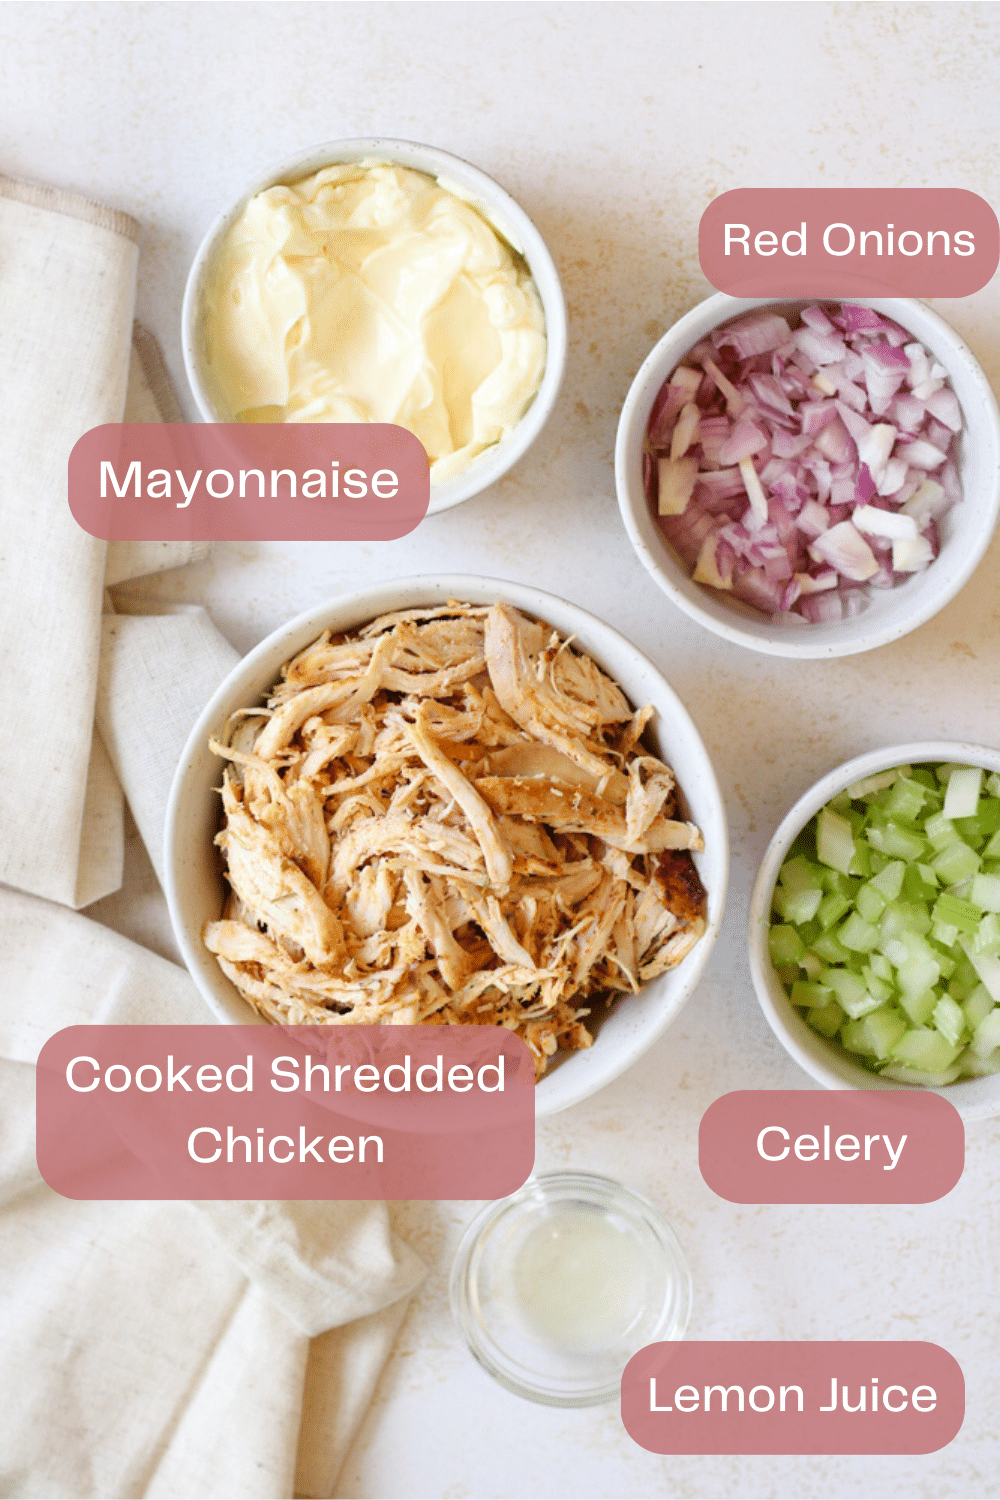 Chicken salad ingredient image graphic.